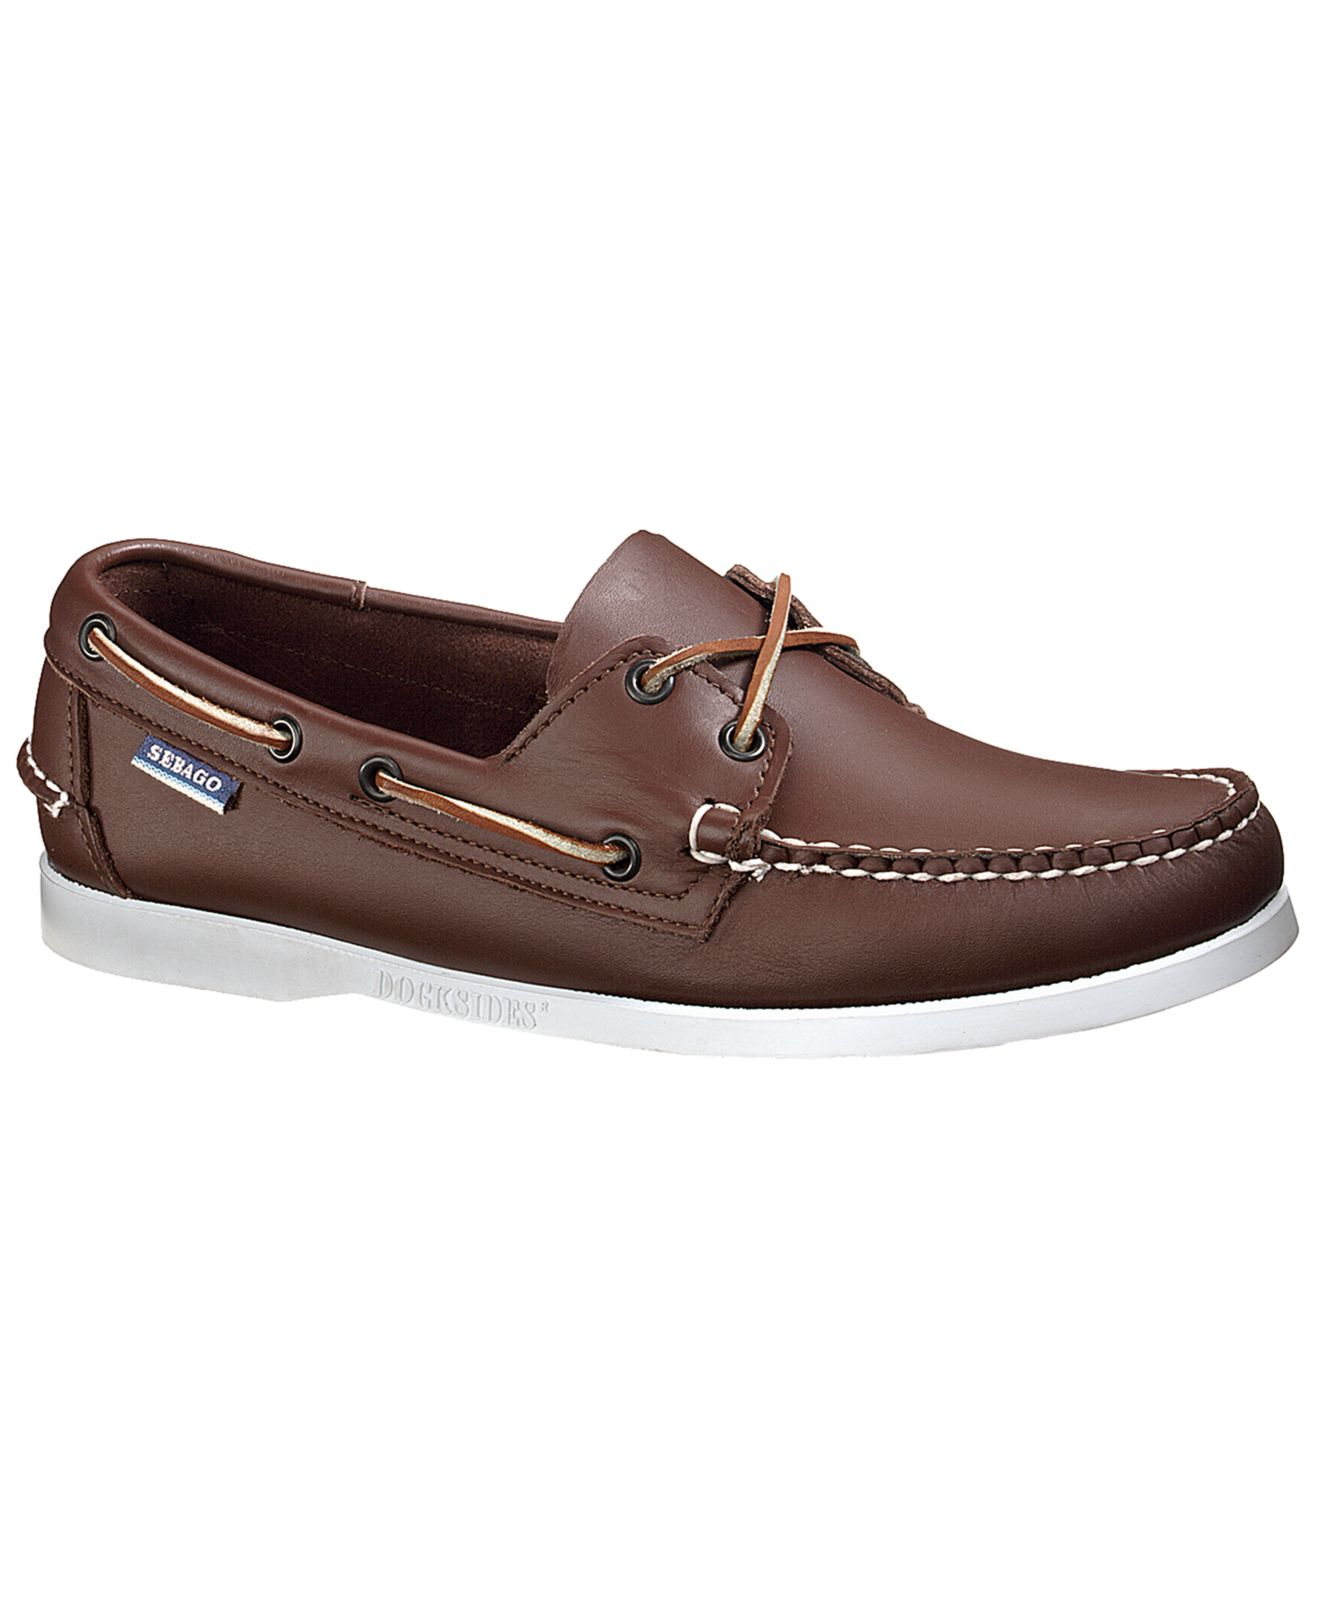 Lyst - Sebago Docksides Boat Shoes in Brown for Men